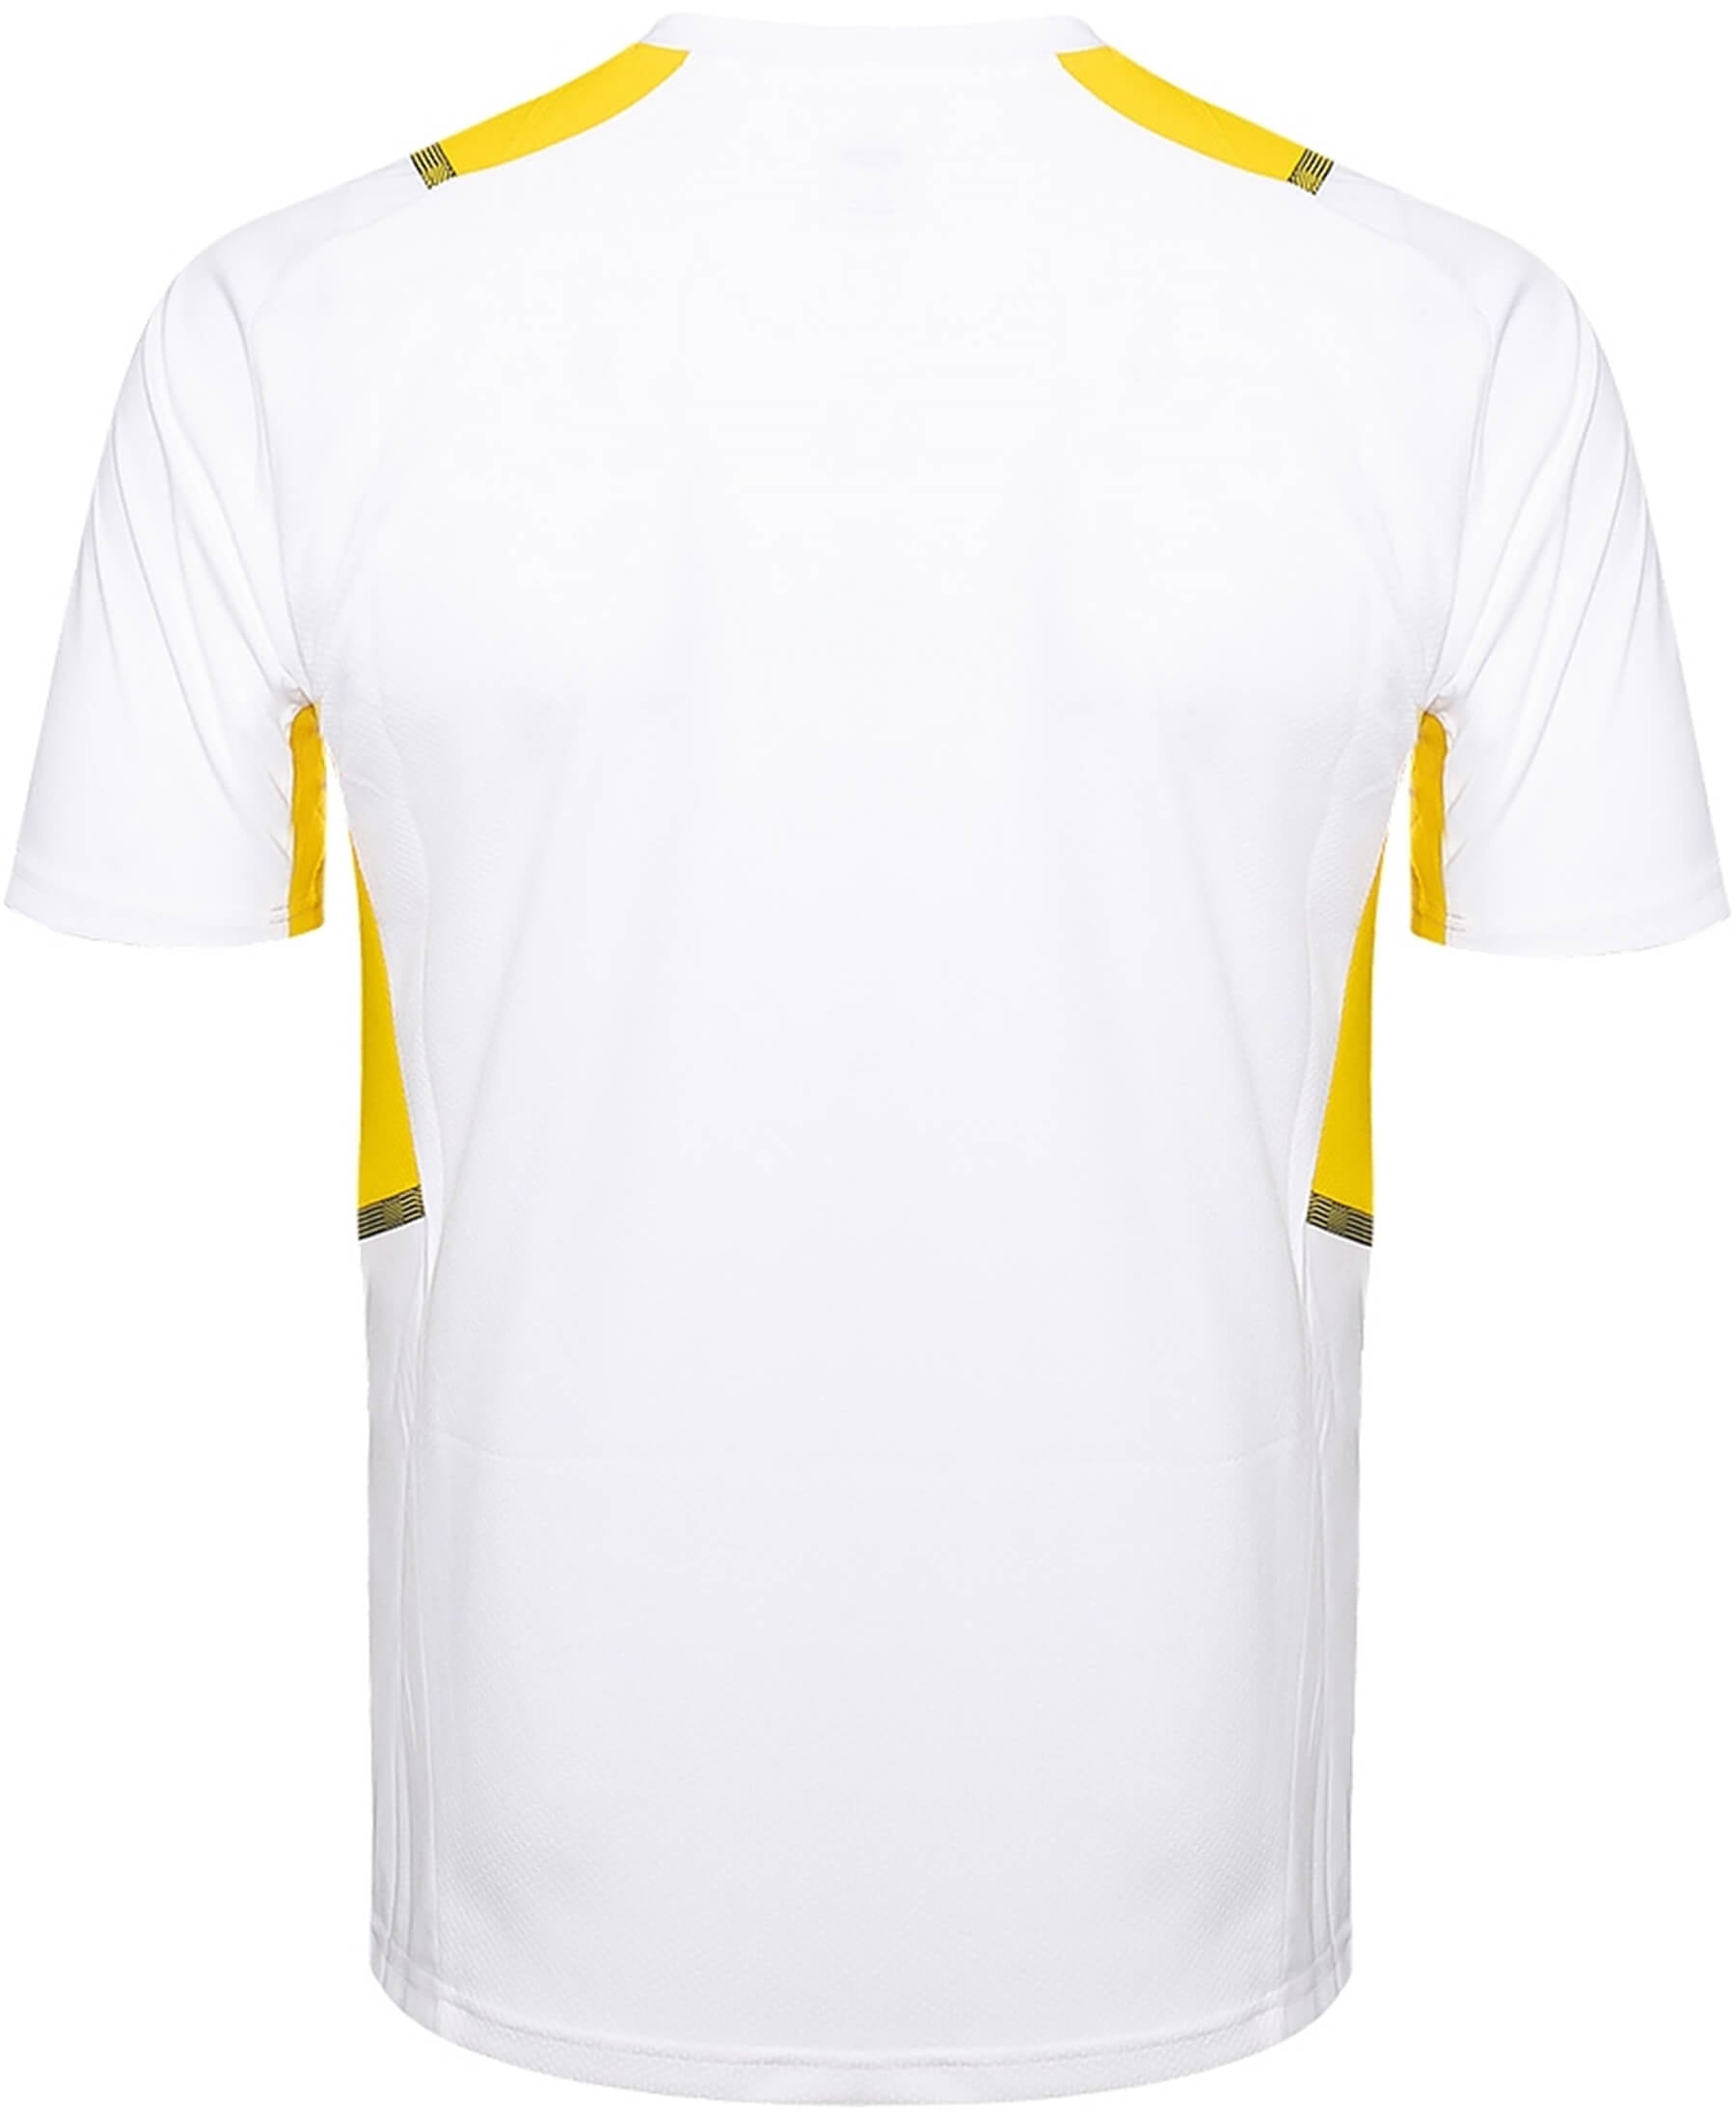 Entdecke das offizielle PUMA Borussia Dortmund BVB Trainingsshirt 2021/2022 bei SHOP4TEAMSPORT. Unterstütze deinen Verein mit diesem hochwertigen Trainingsshirt, das mit dem BVB-Logo und dynamischem Design deine Fußballbegeisterung zeigt. Das atmungsaktive Material bietet maximalen Tragekomfort während des Trainings oder im Alltag. Die perfekte Passform und hohe Funktionalität machen dieses Shirt zu einem Muss für jeden BVB-Fan.